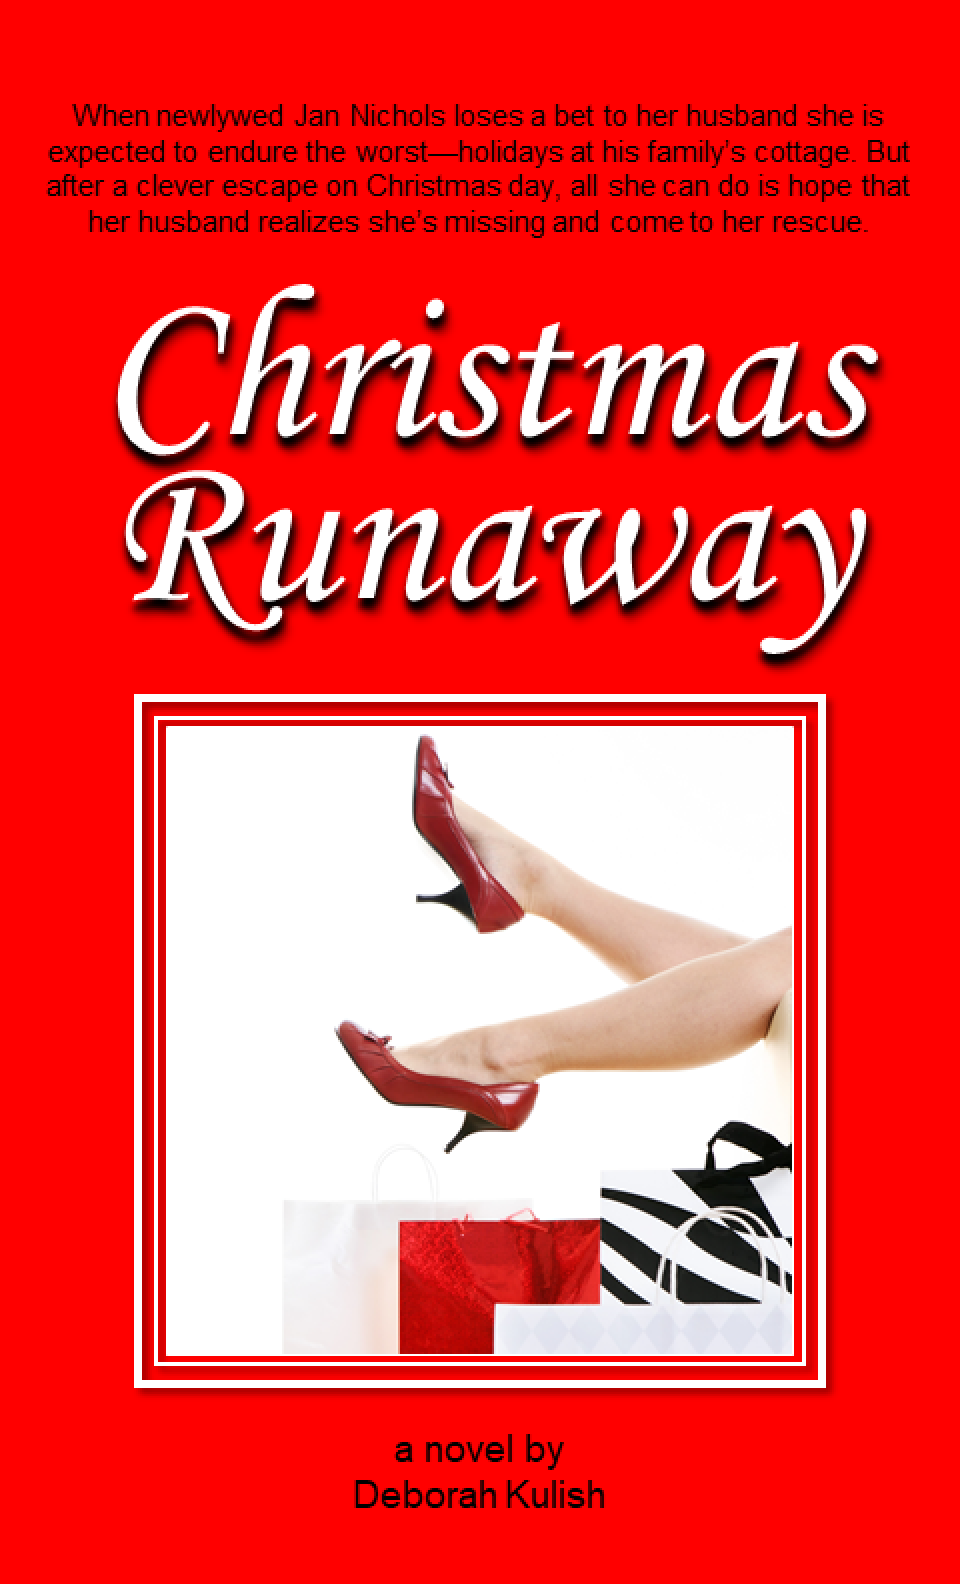 Christmas Runaway, a novel by Deborah Kulish